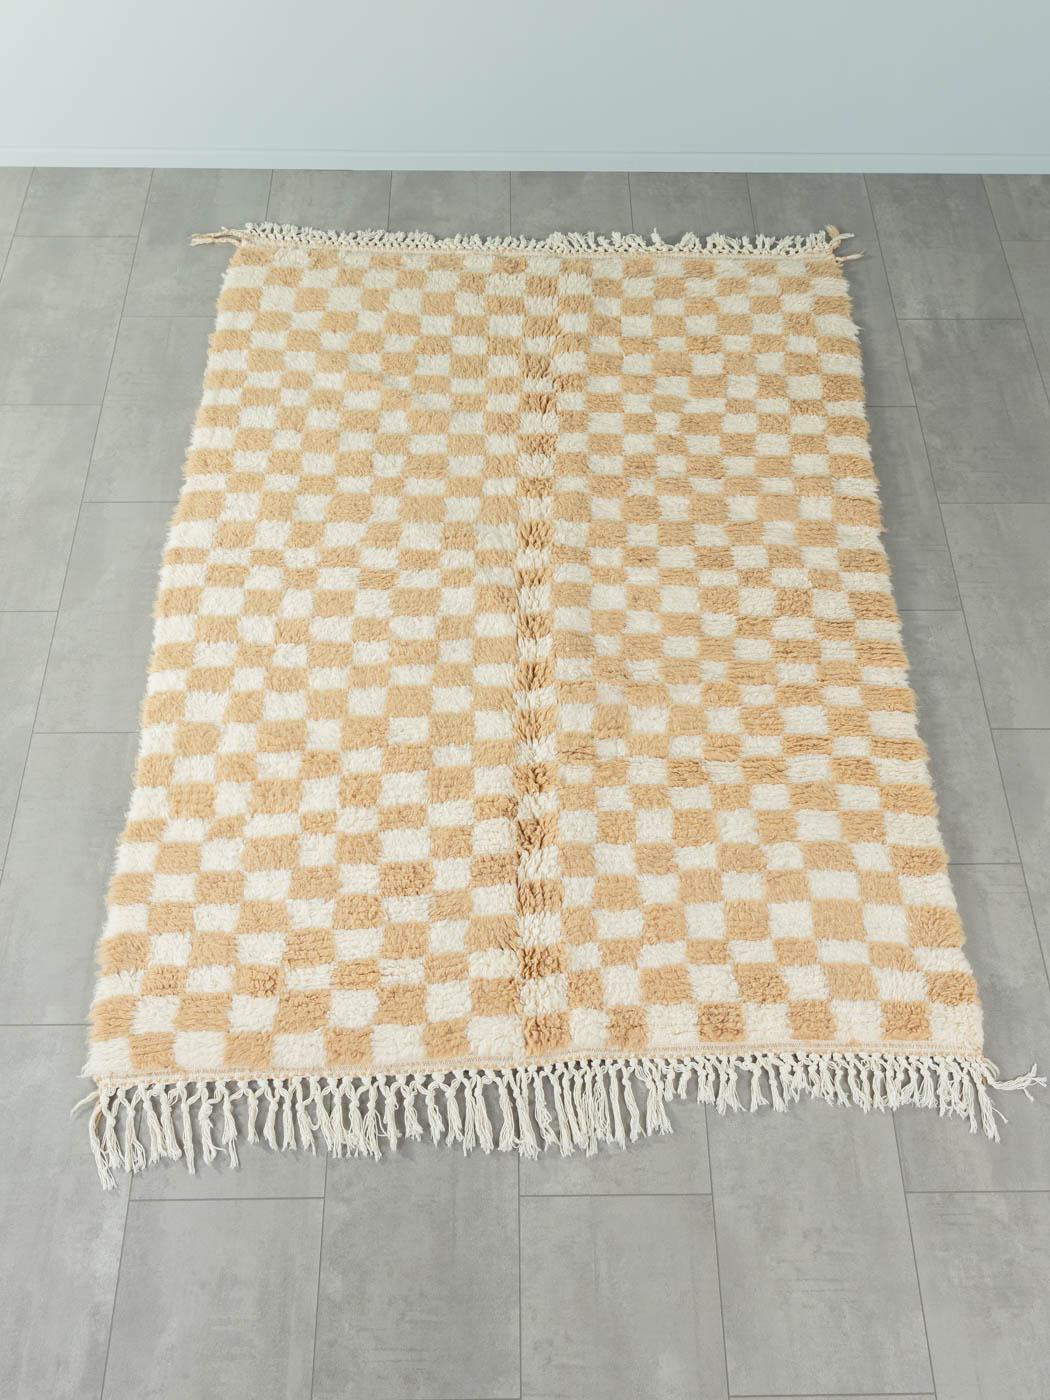 Sand Check ist ein moderner Teppich aus 100% Wolle - dick und weich, angenehm zu tragen. Unsere Berberteppiche werden von Amazigh-Frauen im Atlasgebirge handgewebt und handgeknüpft. Diese Gemeinschaften stellen schon seit Tausenden von Jahren